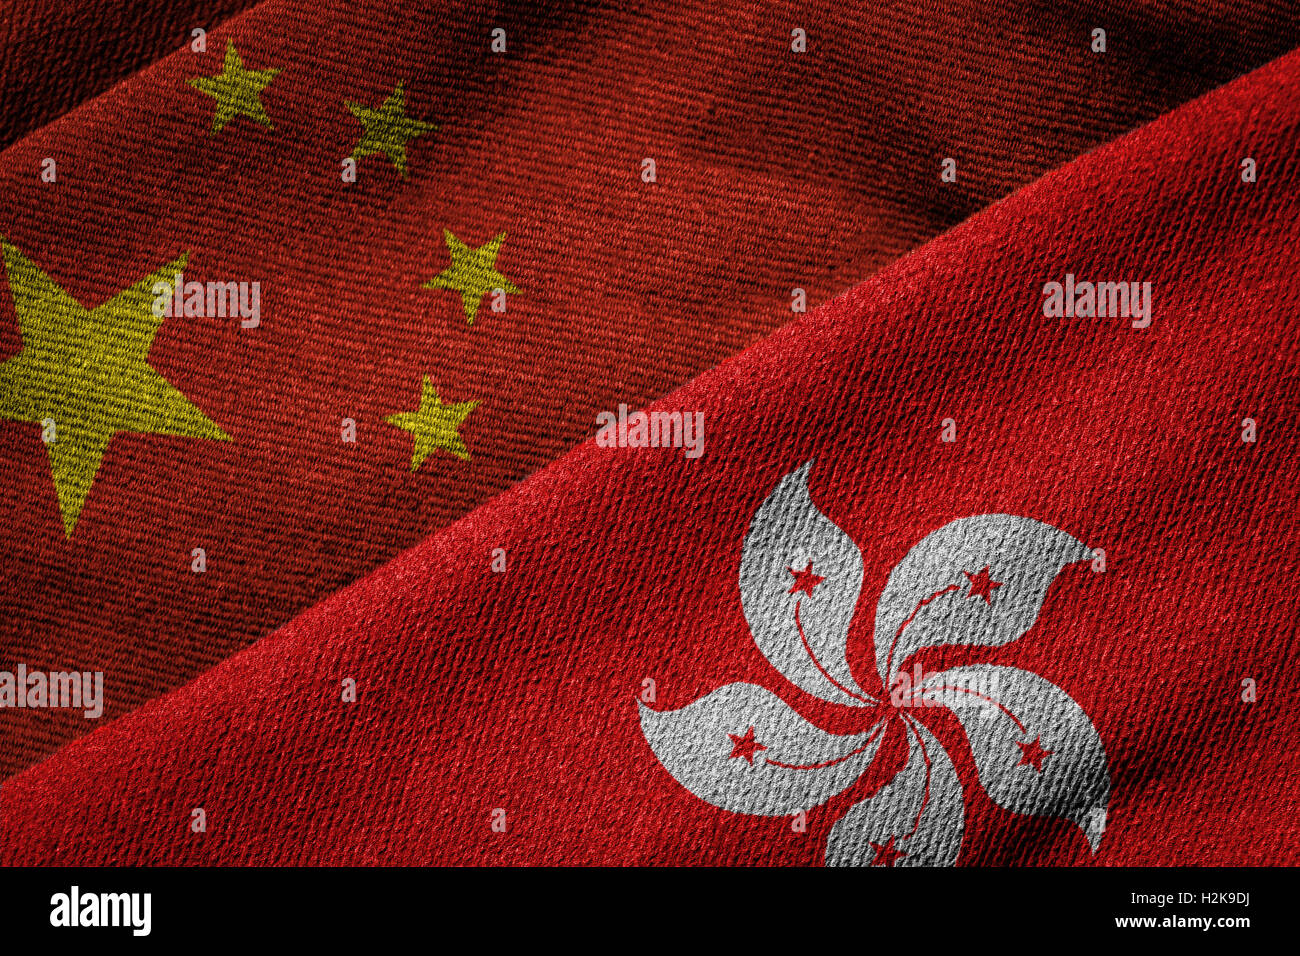 Representación 3D de las banderas de China y Hong Kong en tejido de textura. Hong Kong es una Región Administrativa Especial de China. Foto de stock